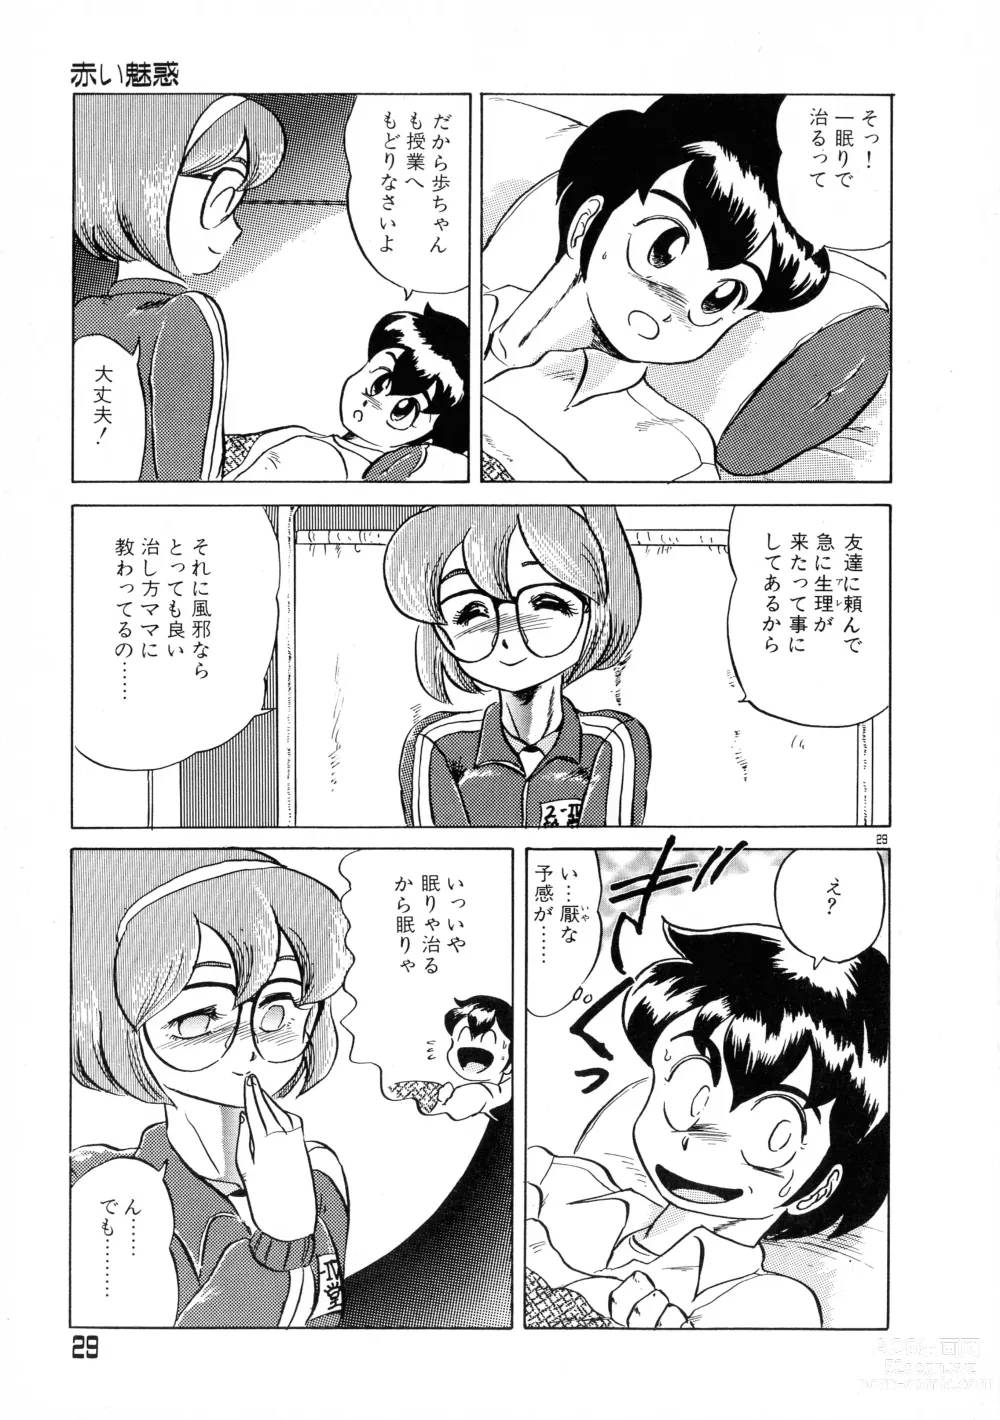 Page 29 of manga Akai Miwaku